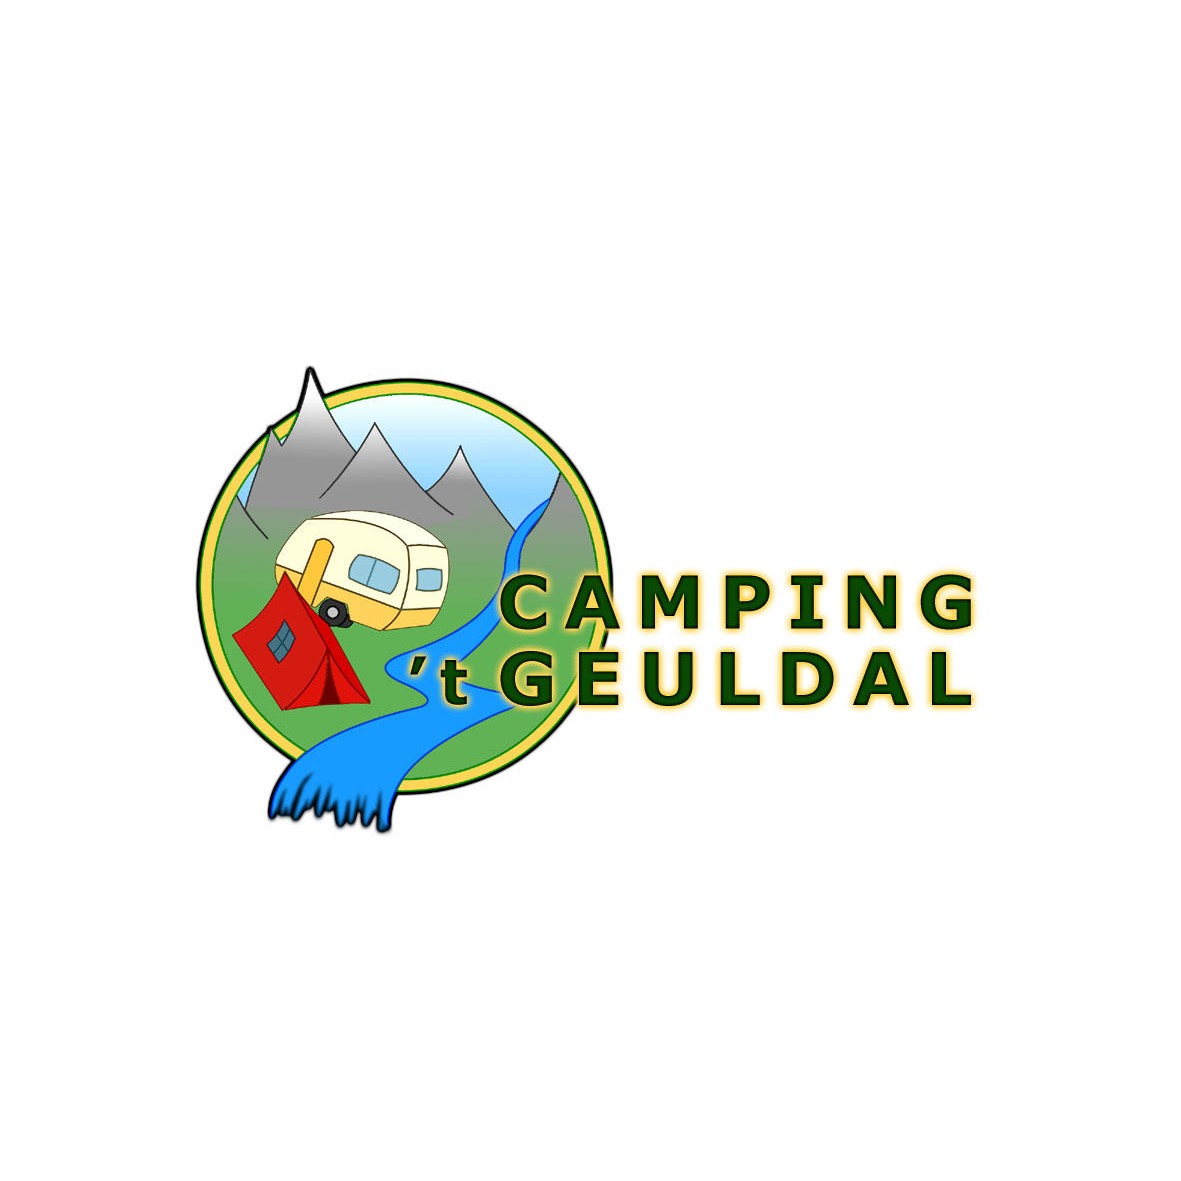 Geuldal Camping 't Logo